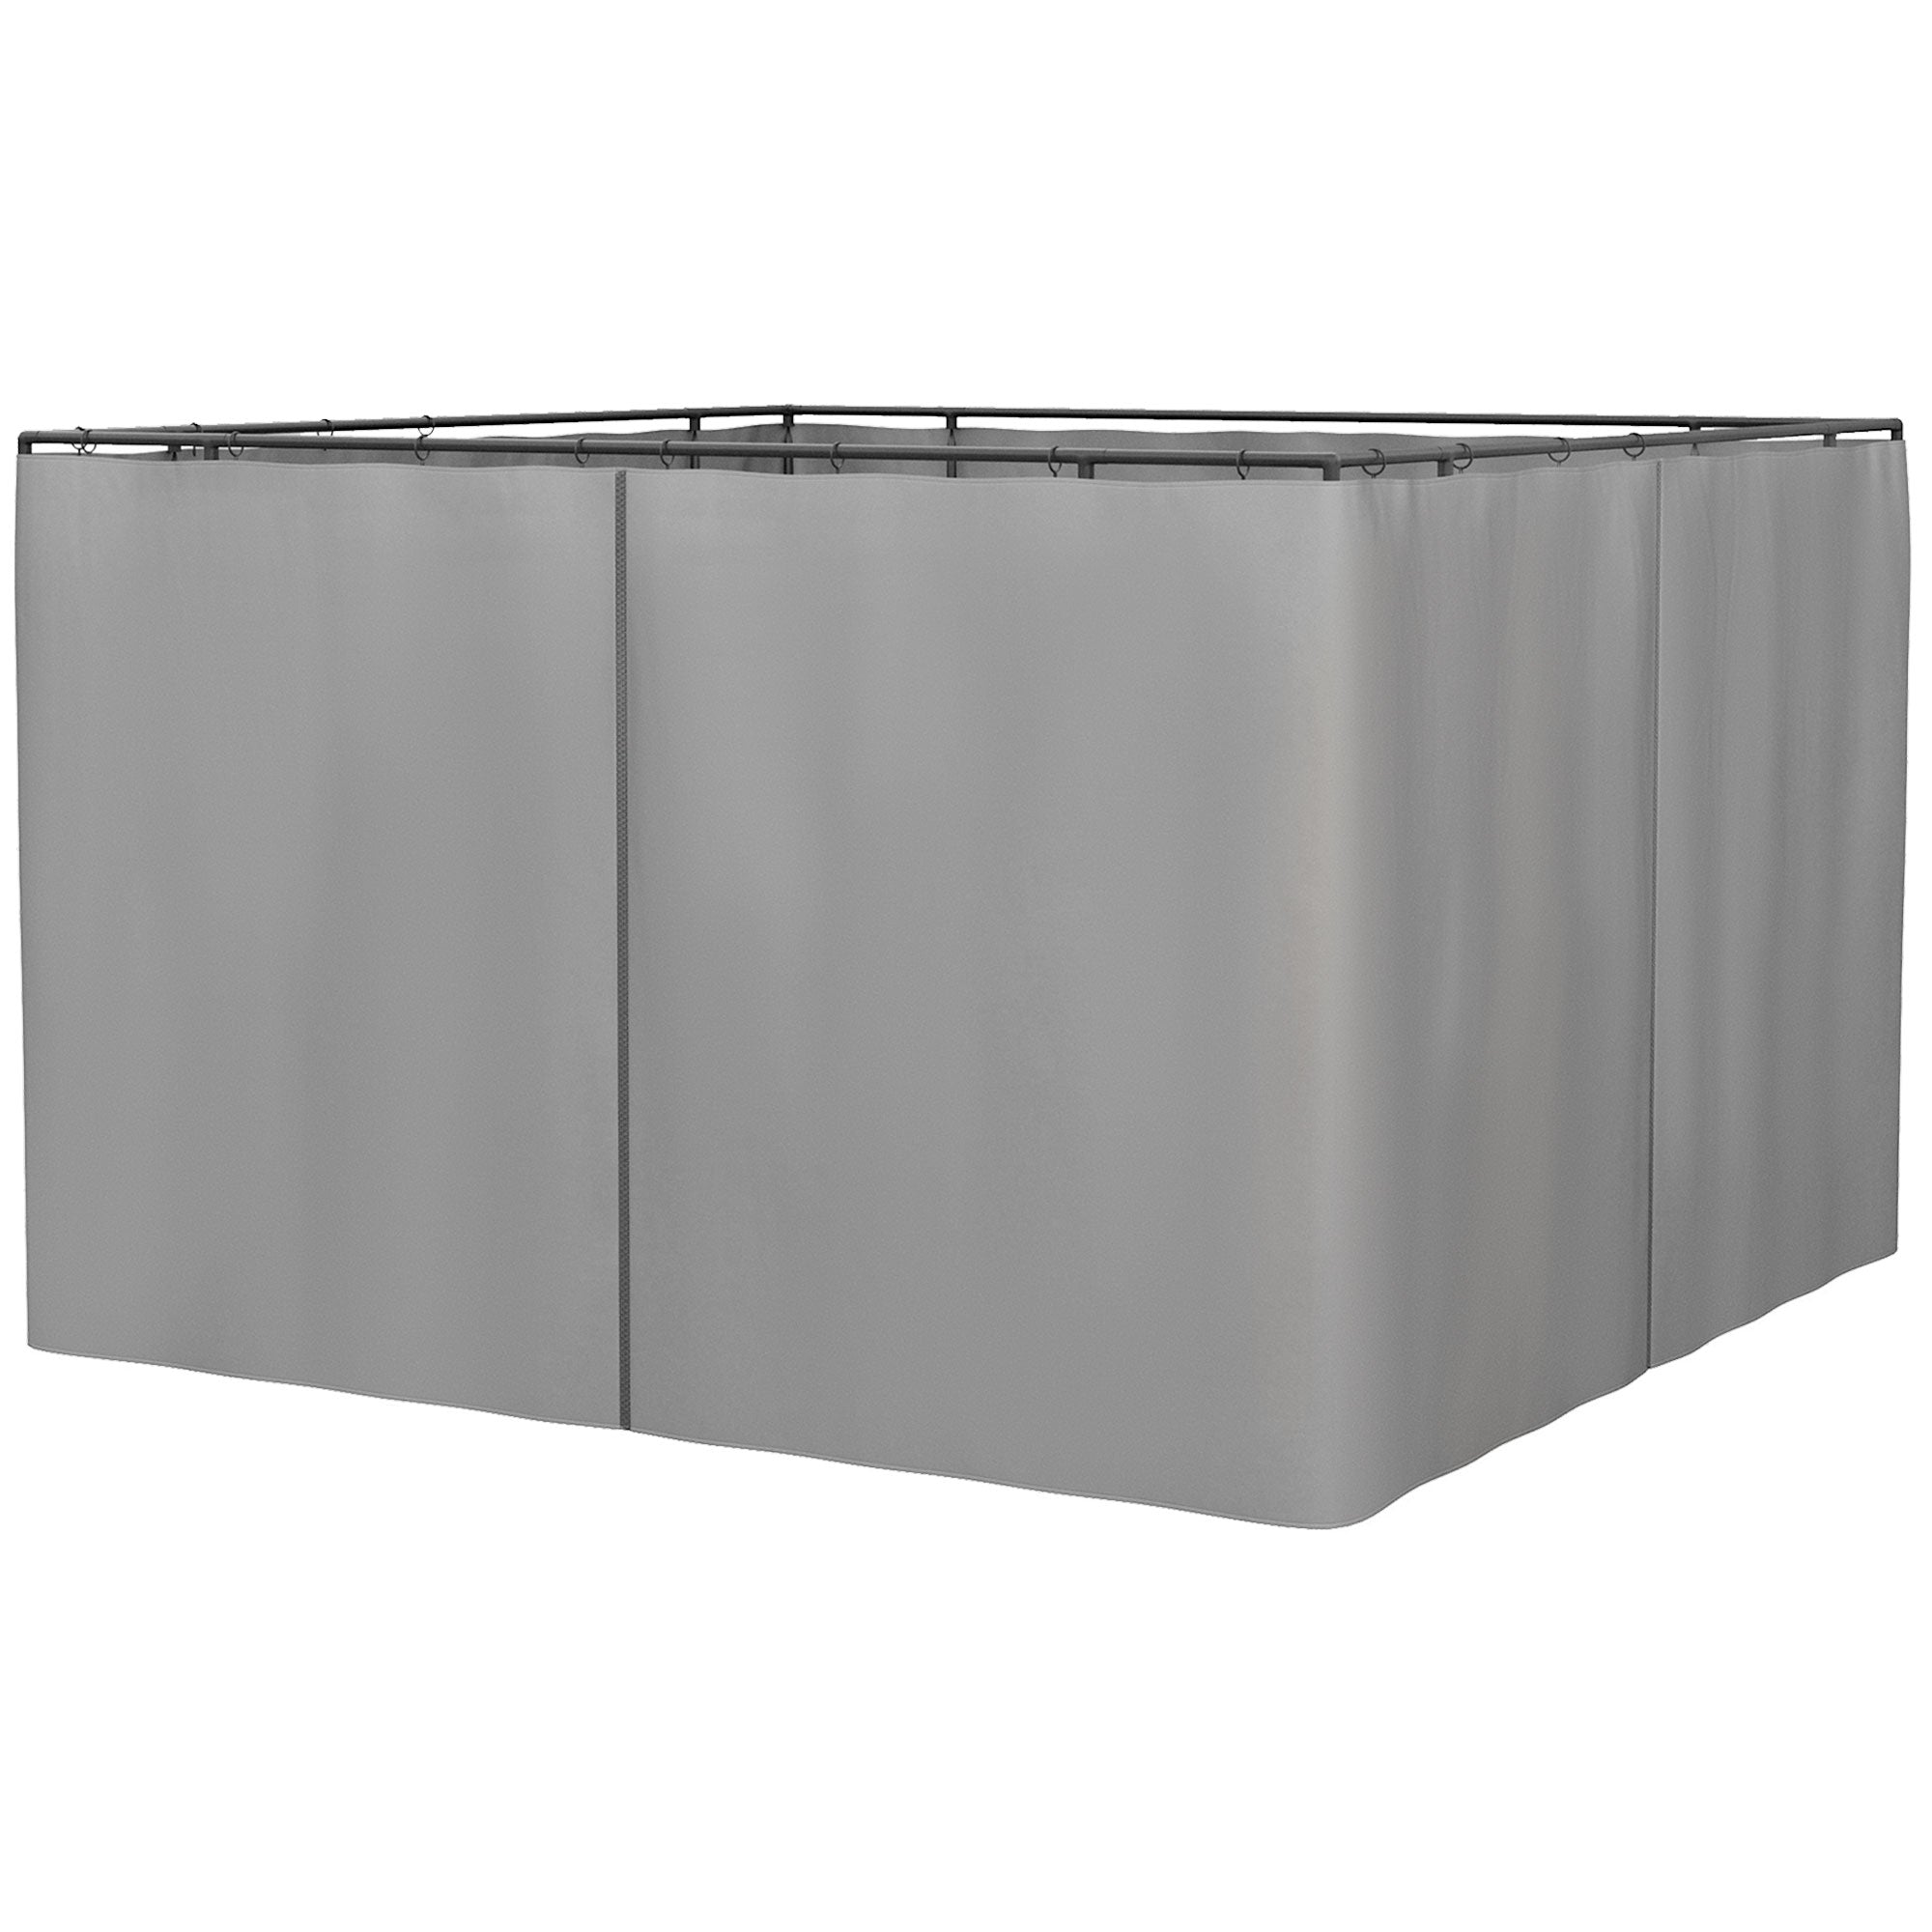 Outsunny 3 x 3(m) Universal Gazebo Replacement Sidewall Set w/ 4 Panels - Grey  | TJ Hughes